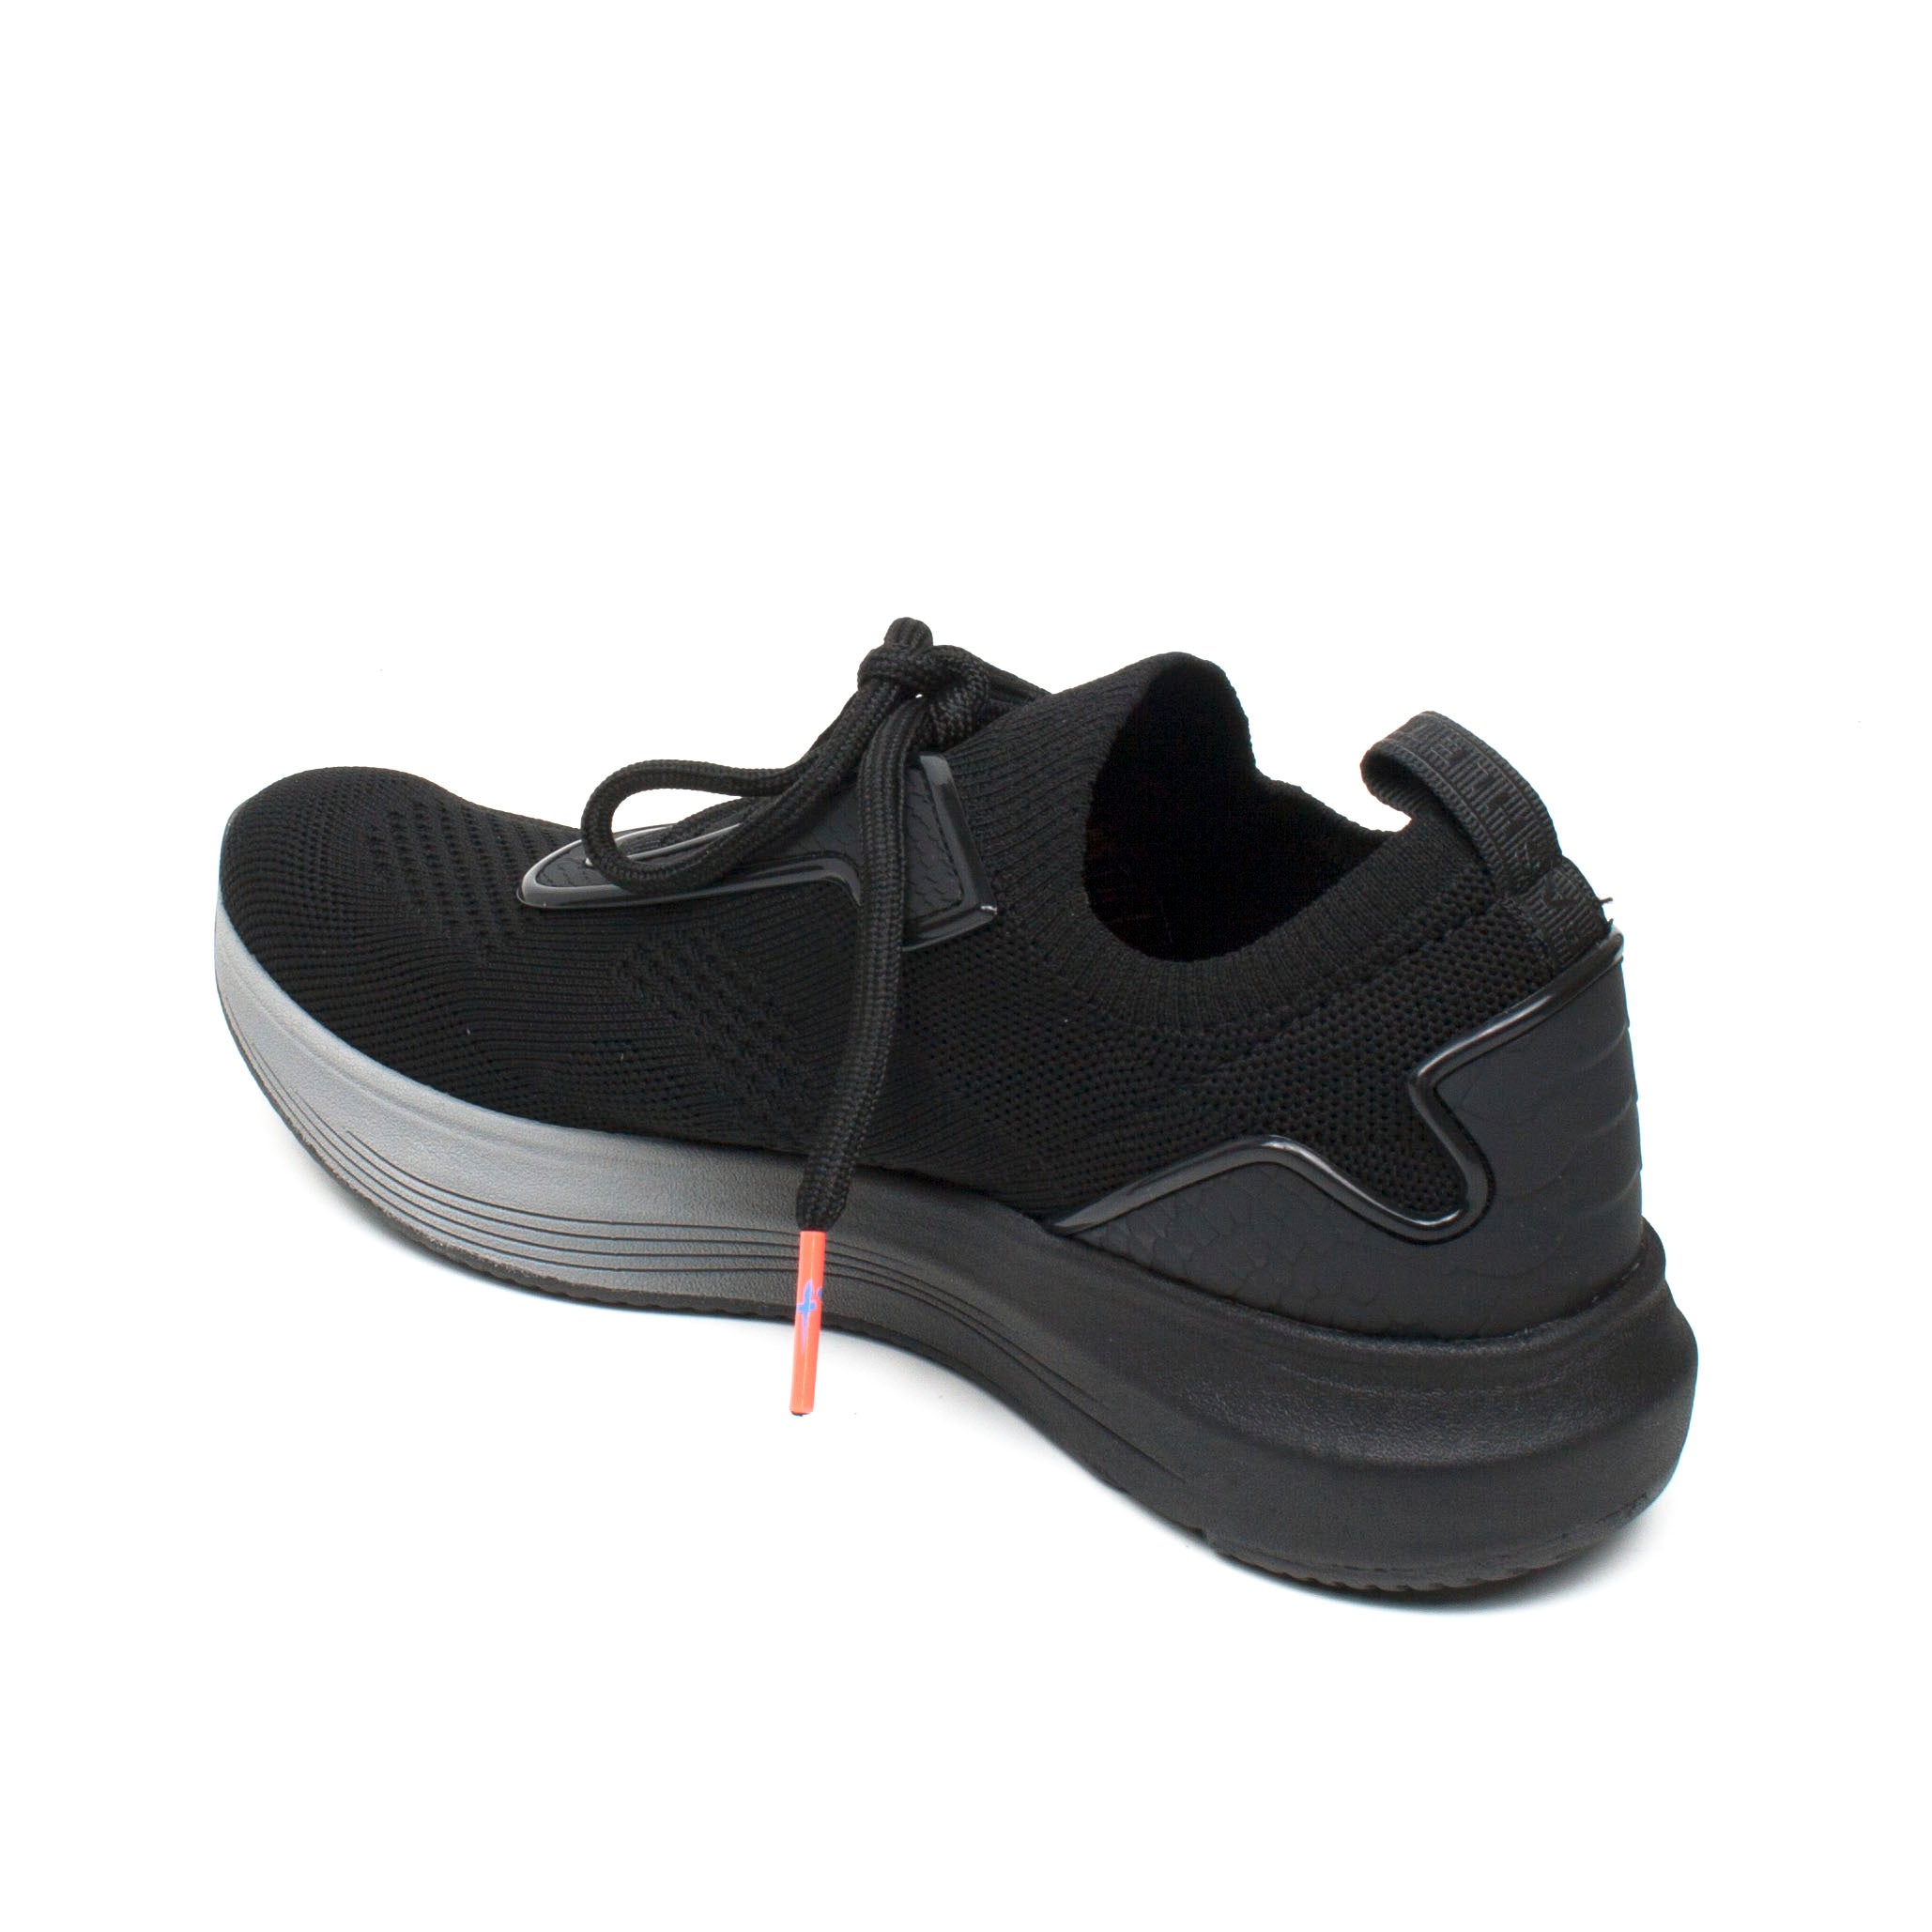 Tamaris Pantofi Dama Sneakers Vam negru ID1874-NG